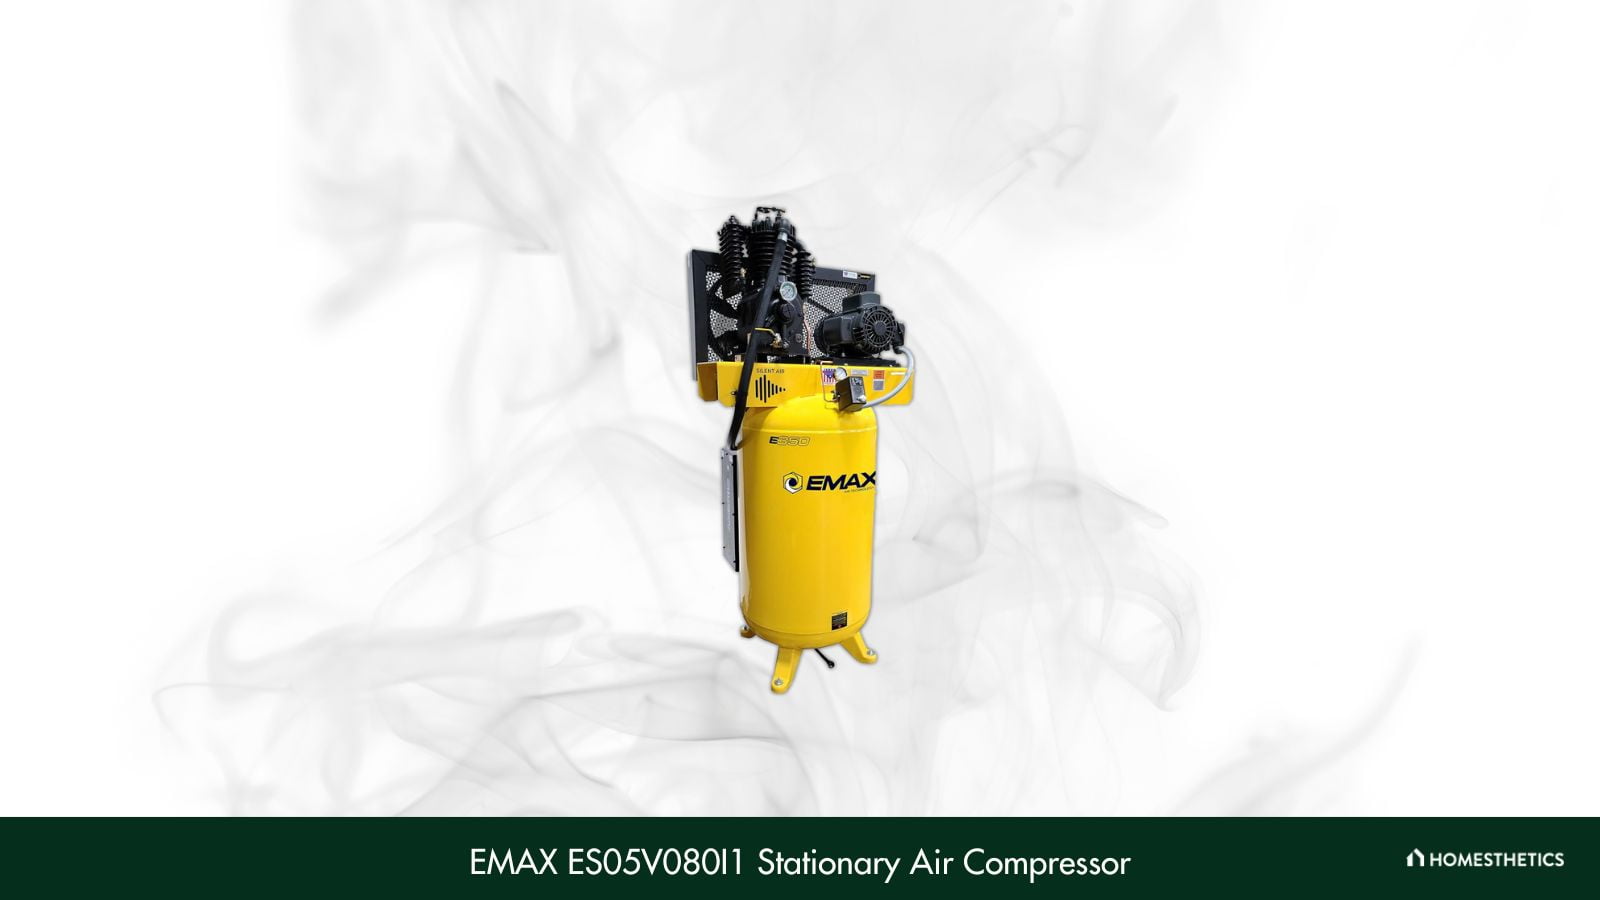 EMAX E350 Stationary Air Compressor ES05V080I1